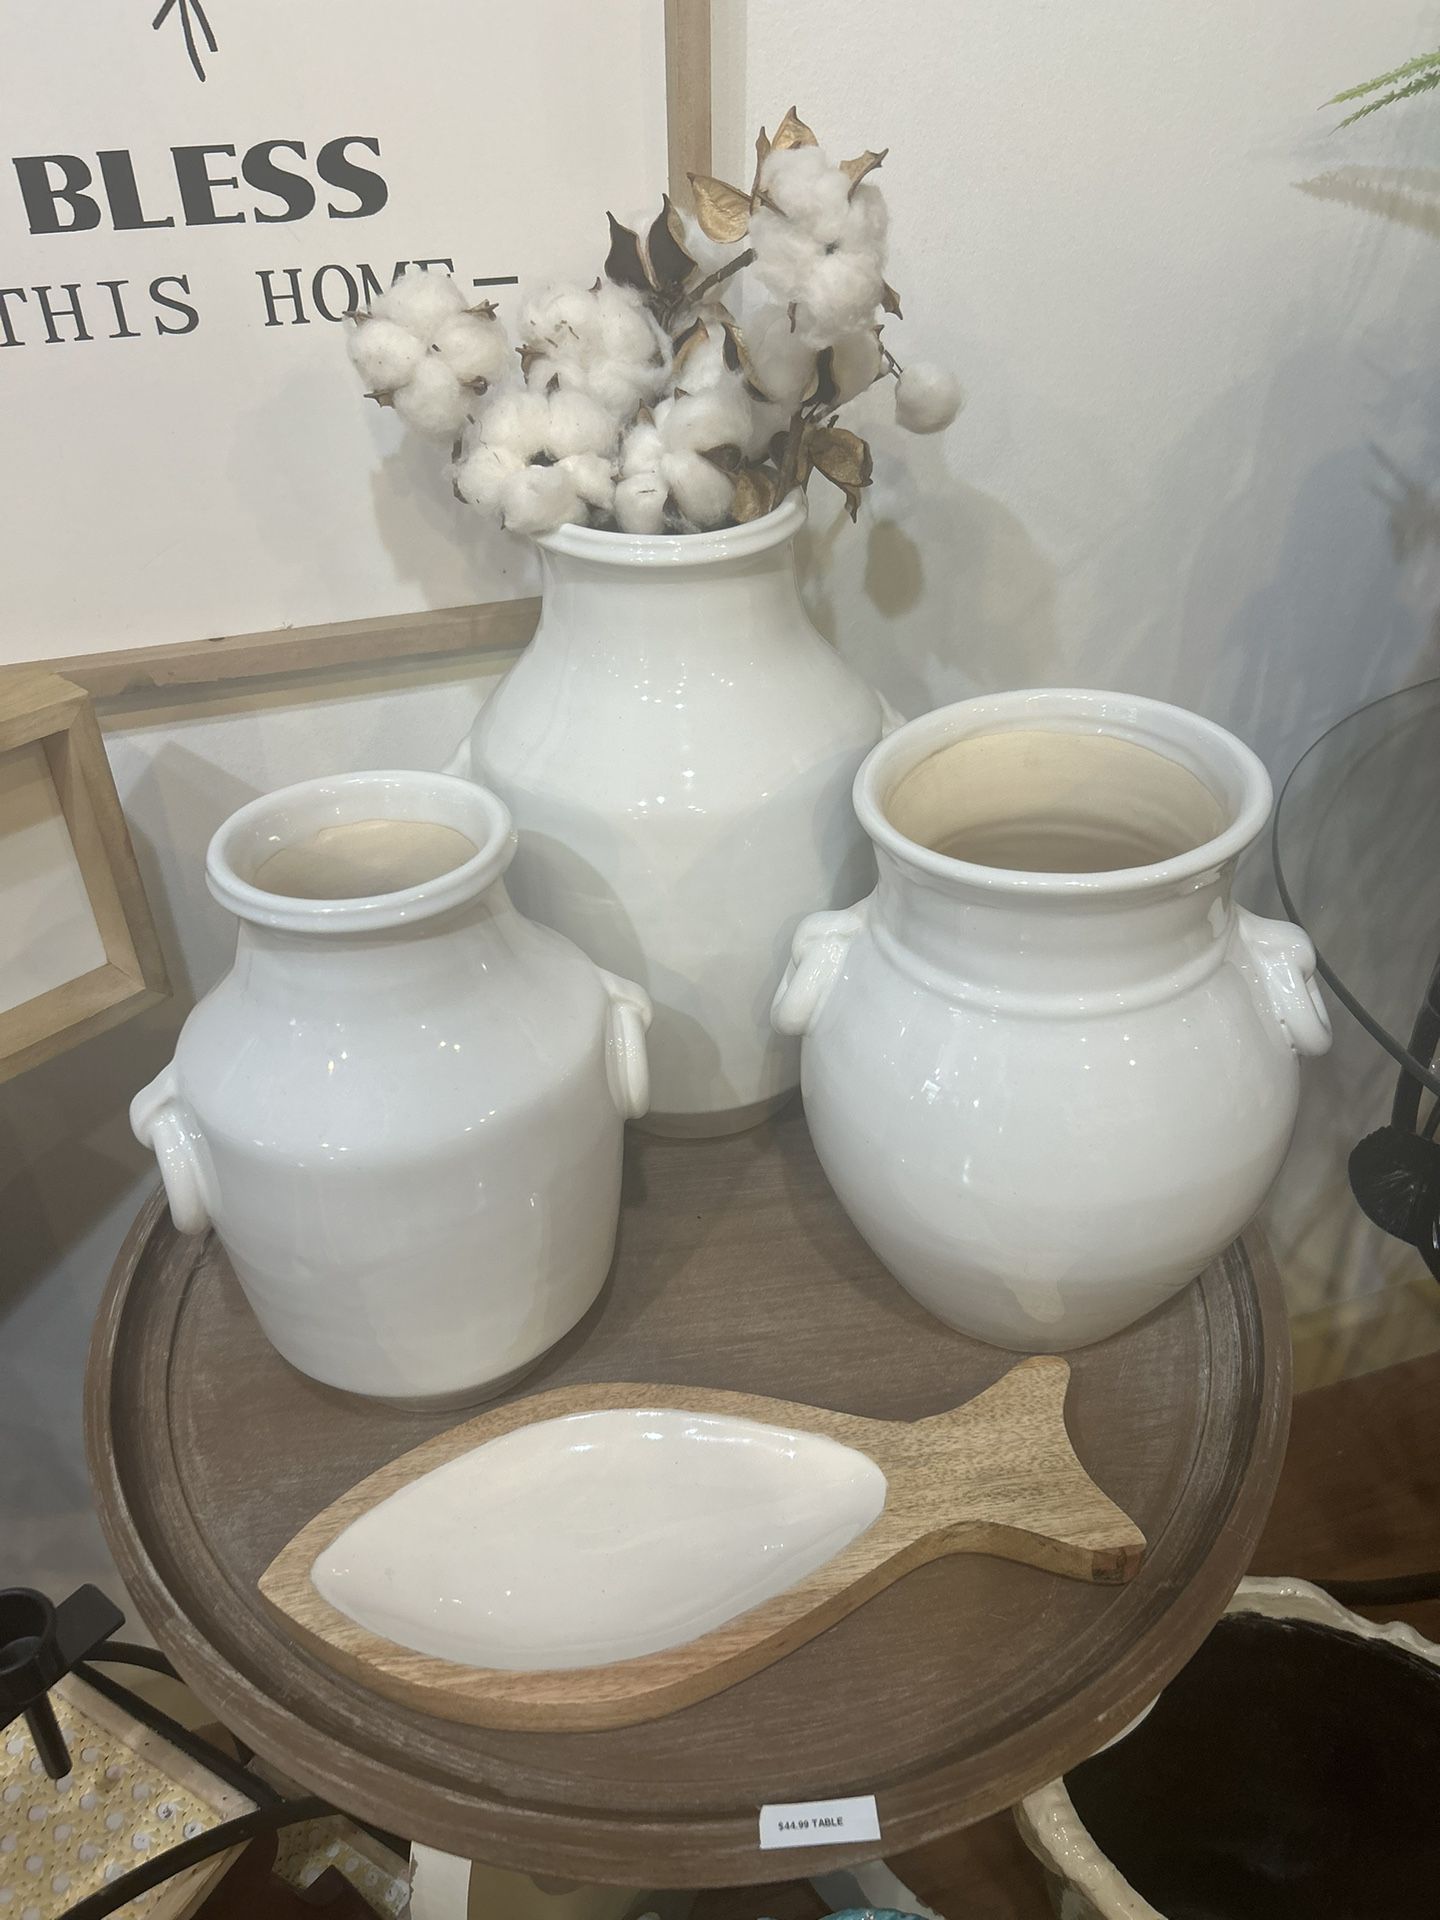 3pc Ceramic Flower Vases 